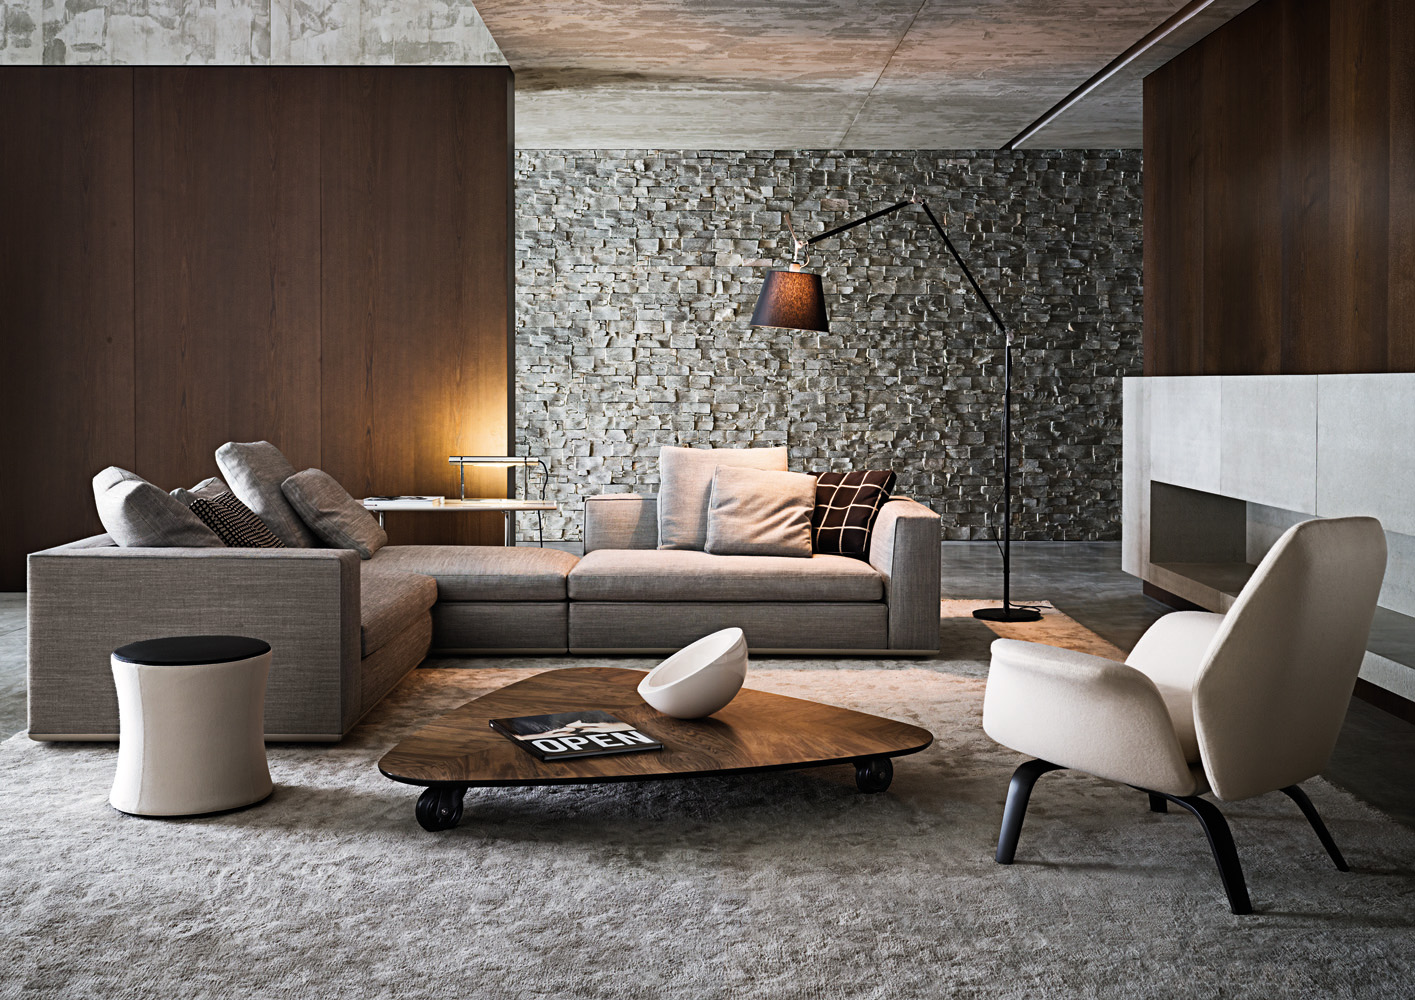 奢侈品家居 现代简约 Minotti Powell sofa 沙发 全球高端家具定制